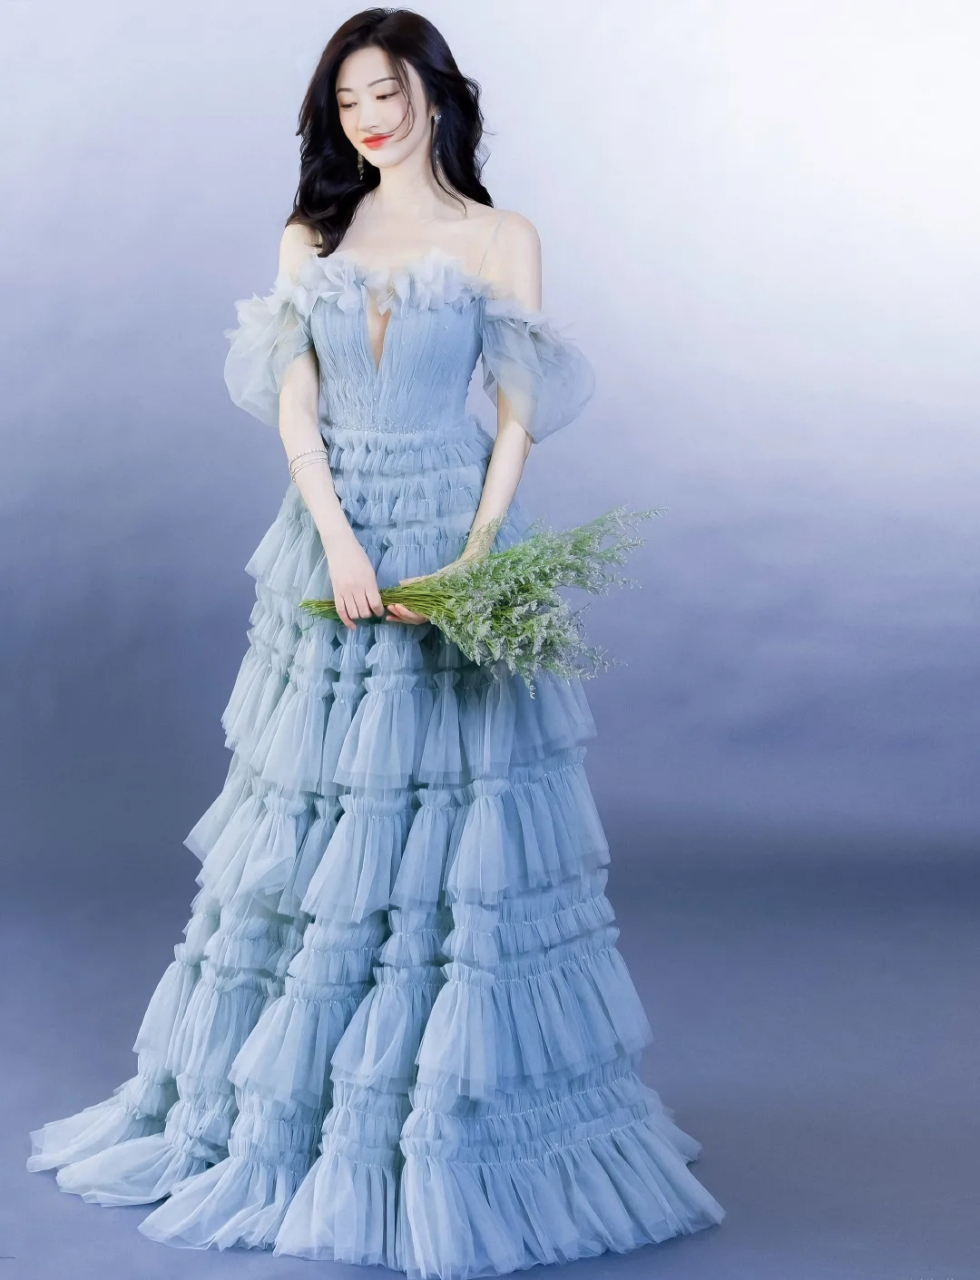 景甜蓝色抹胸蛋糕裙造型甜美迷人,像童话里走出来的公主9499